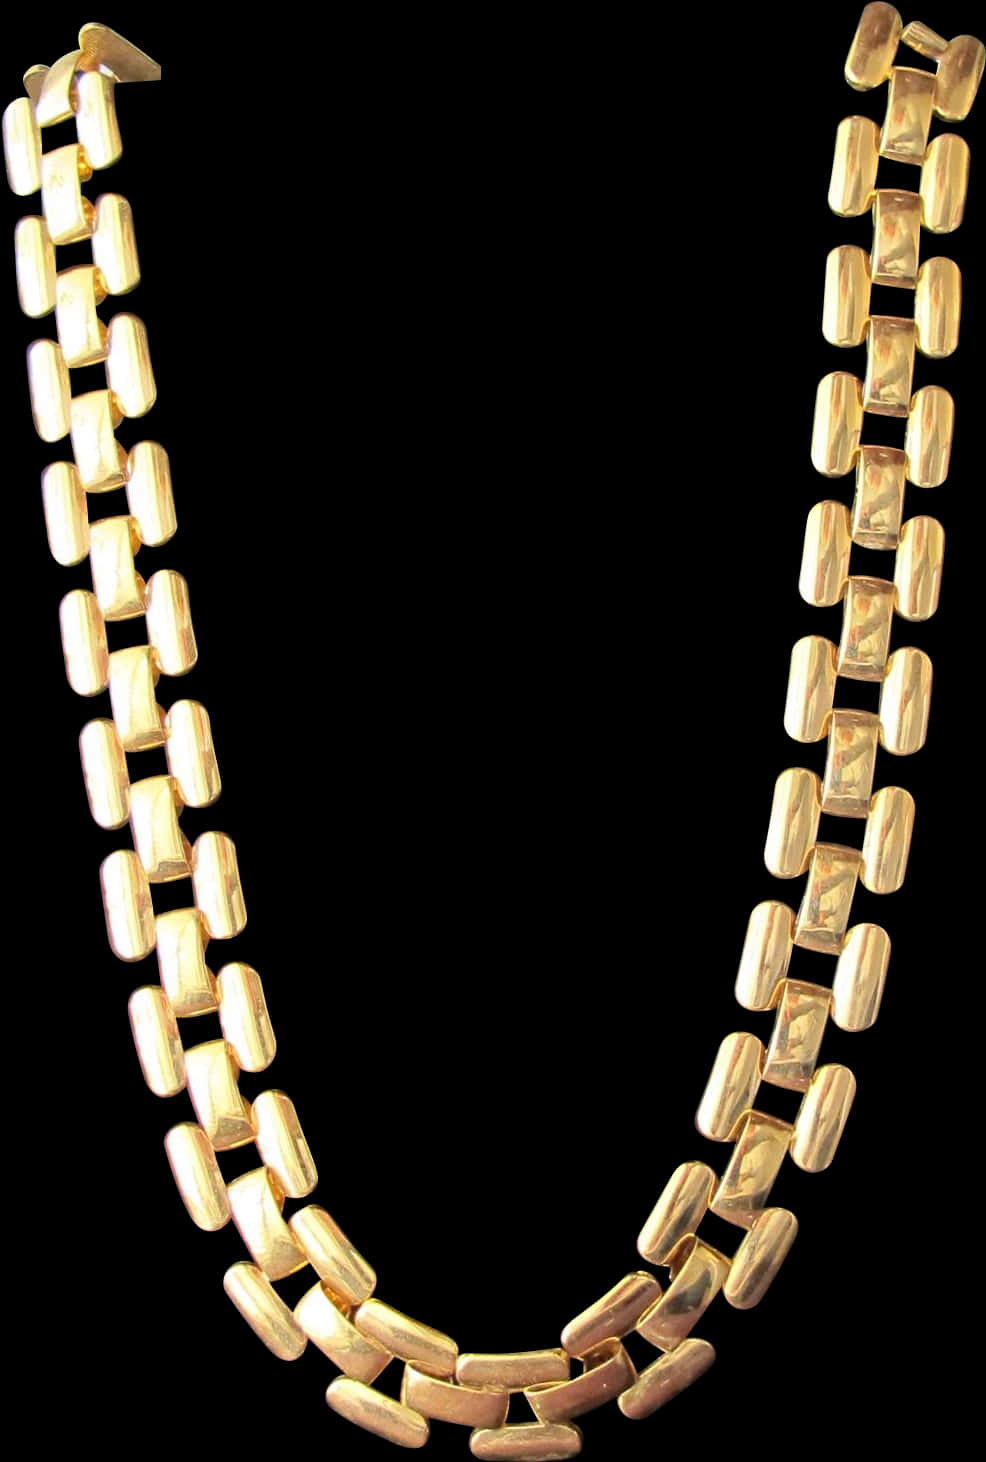 Gold Link Necklace Black Background